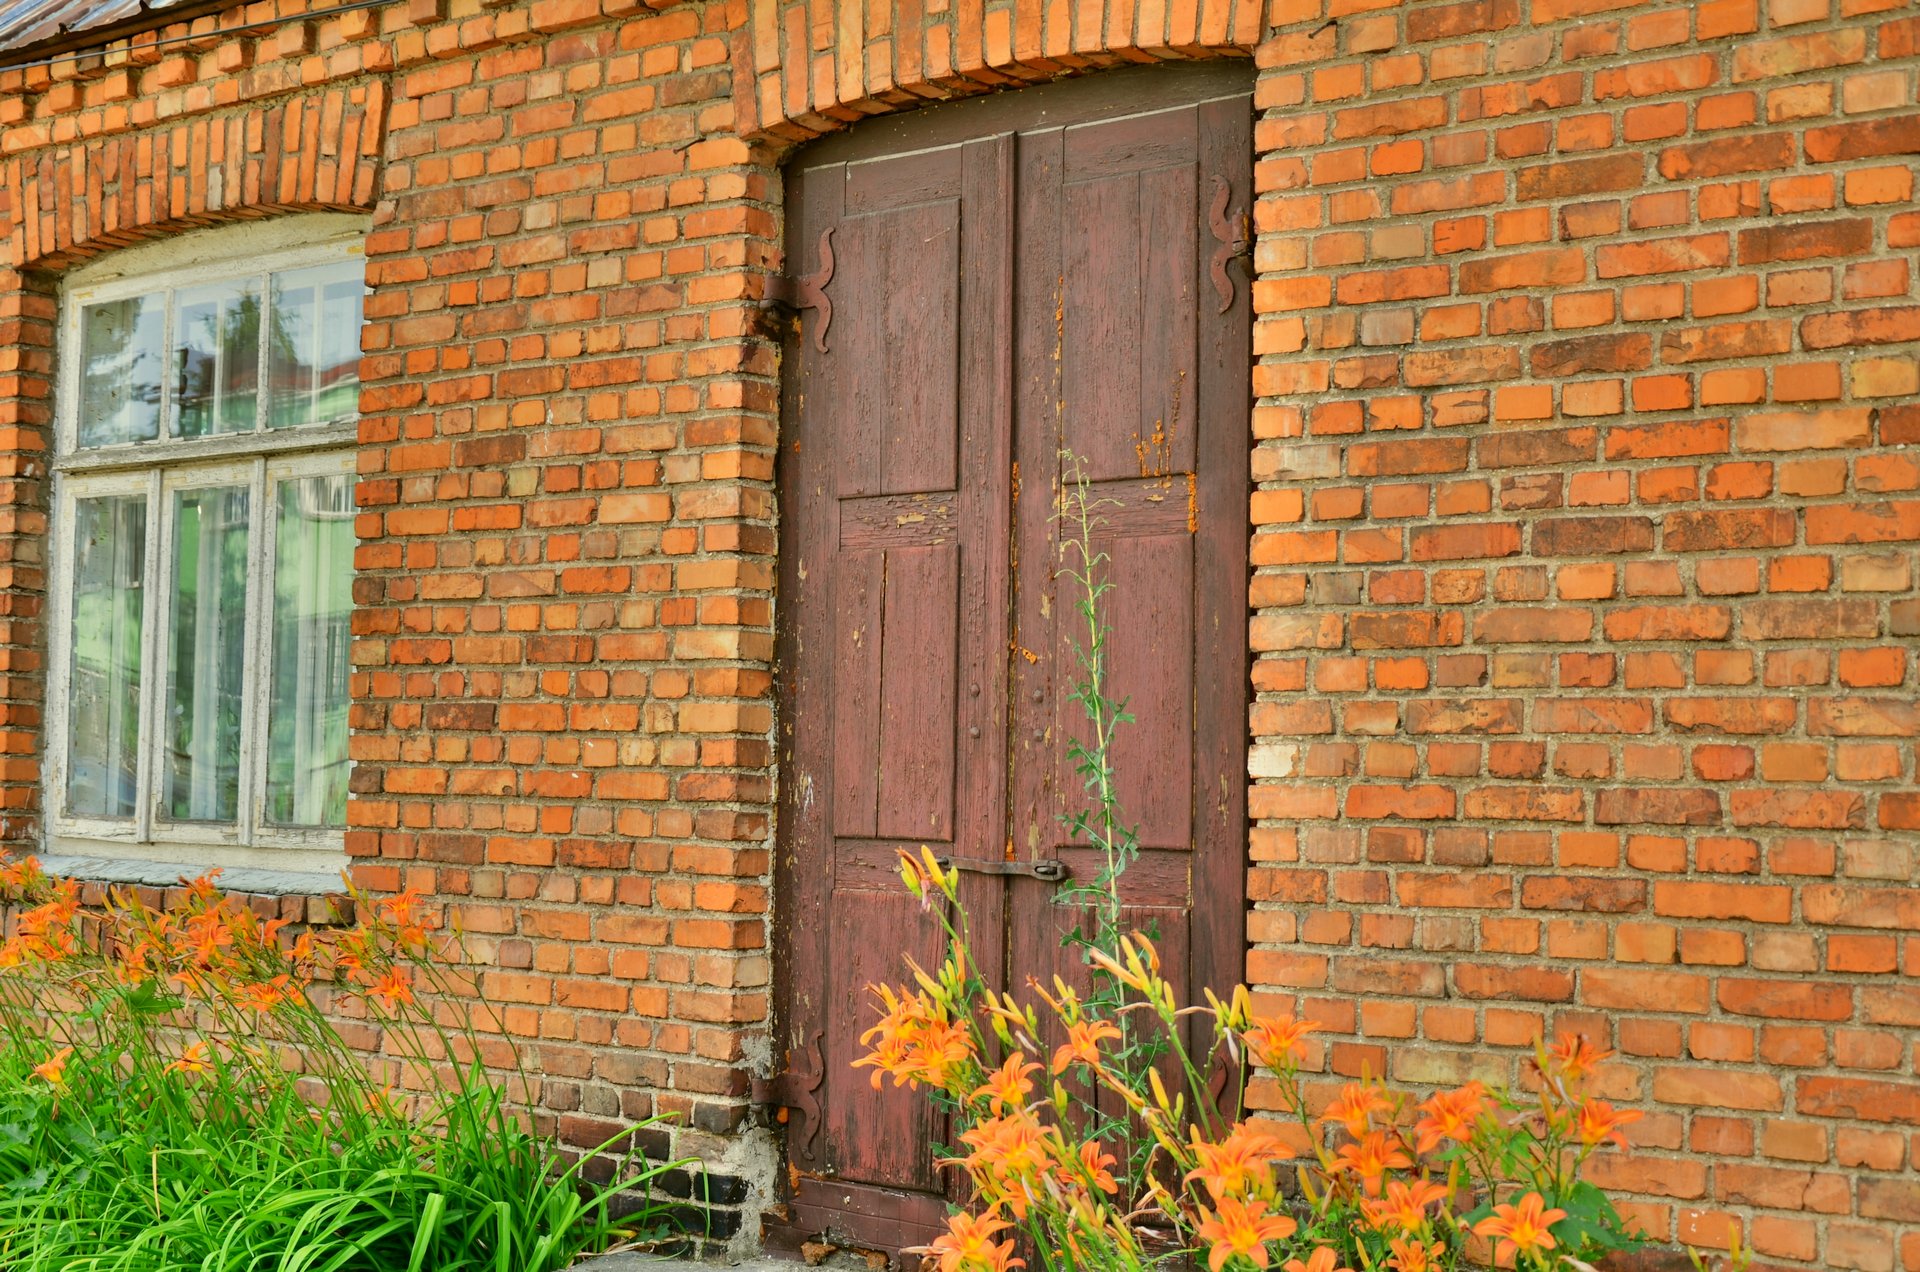 Suchowola drzwi dom murowany cegła czerwona drzwi oknofree photo darmowe zdjęcie